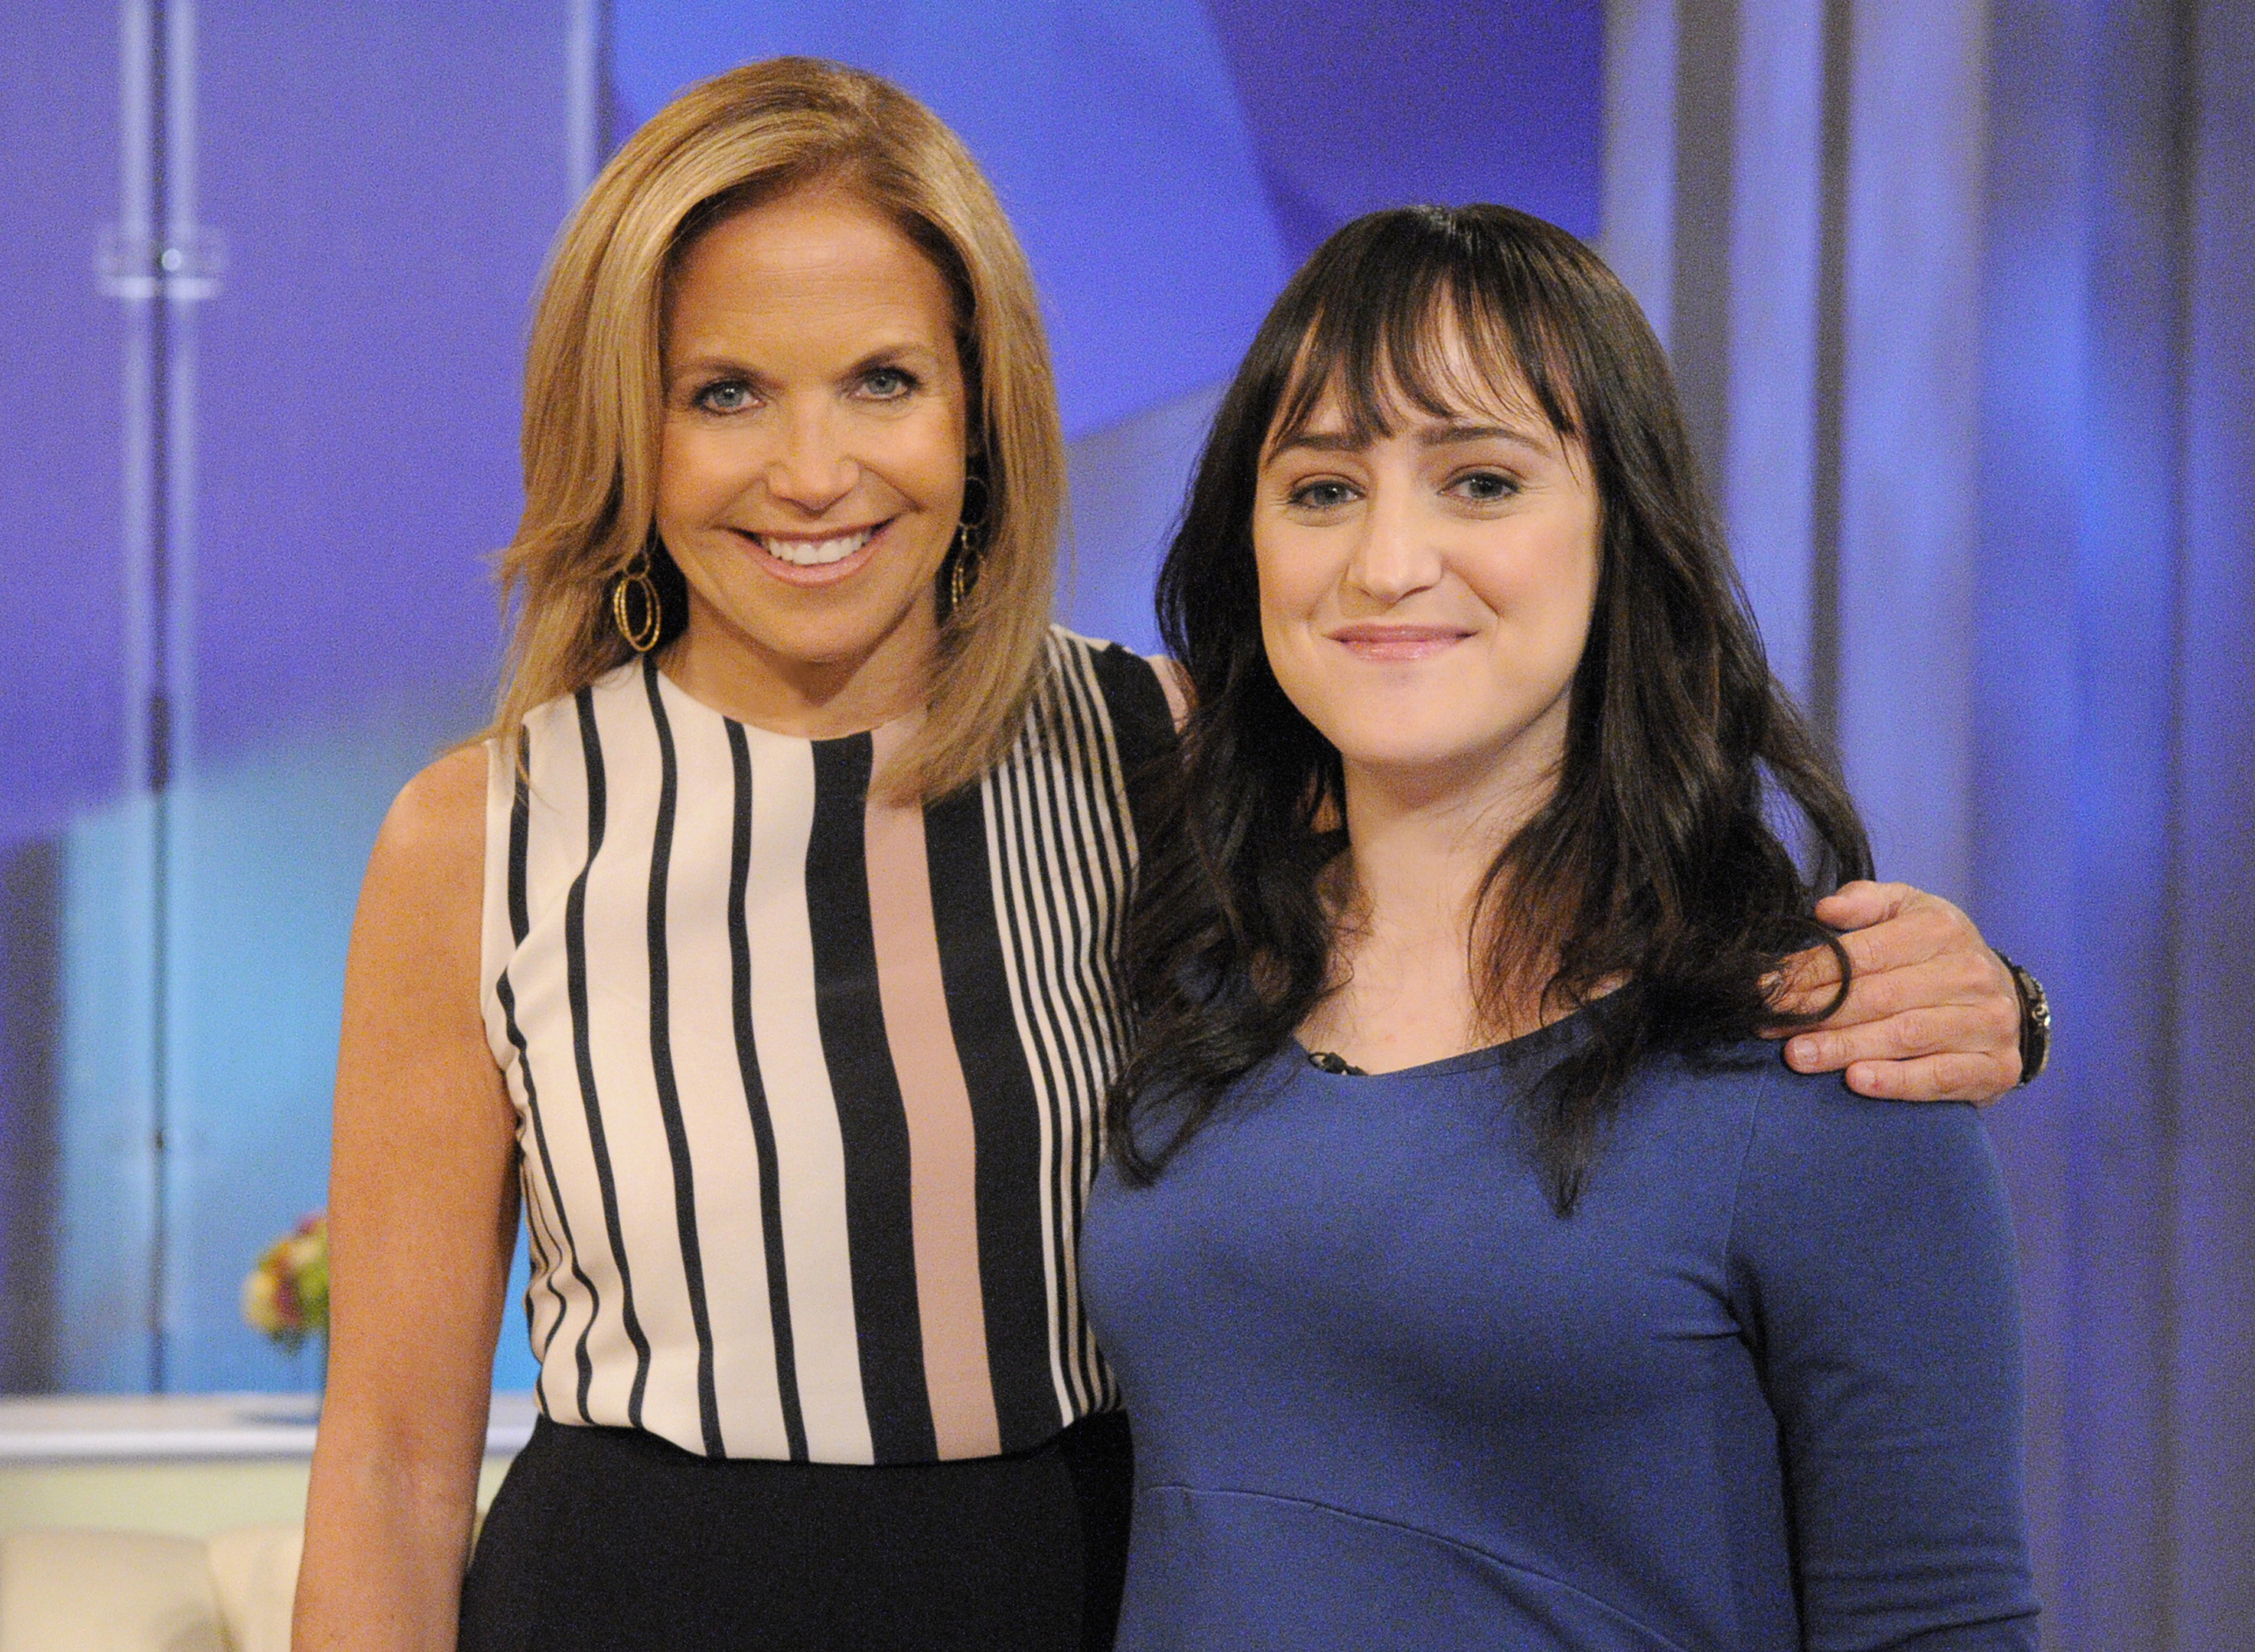 Katie Couric et Mara Wilson photographiées sur le plateau de l'émission "Katie" sur ABC le 29 mai 2013 | Source : Getty Images